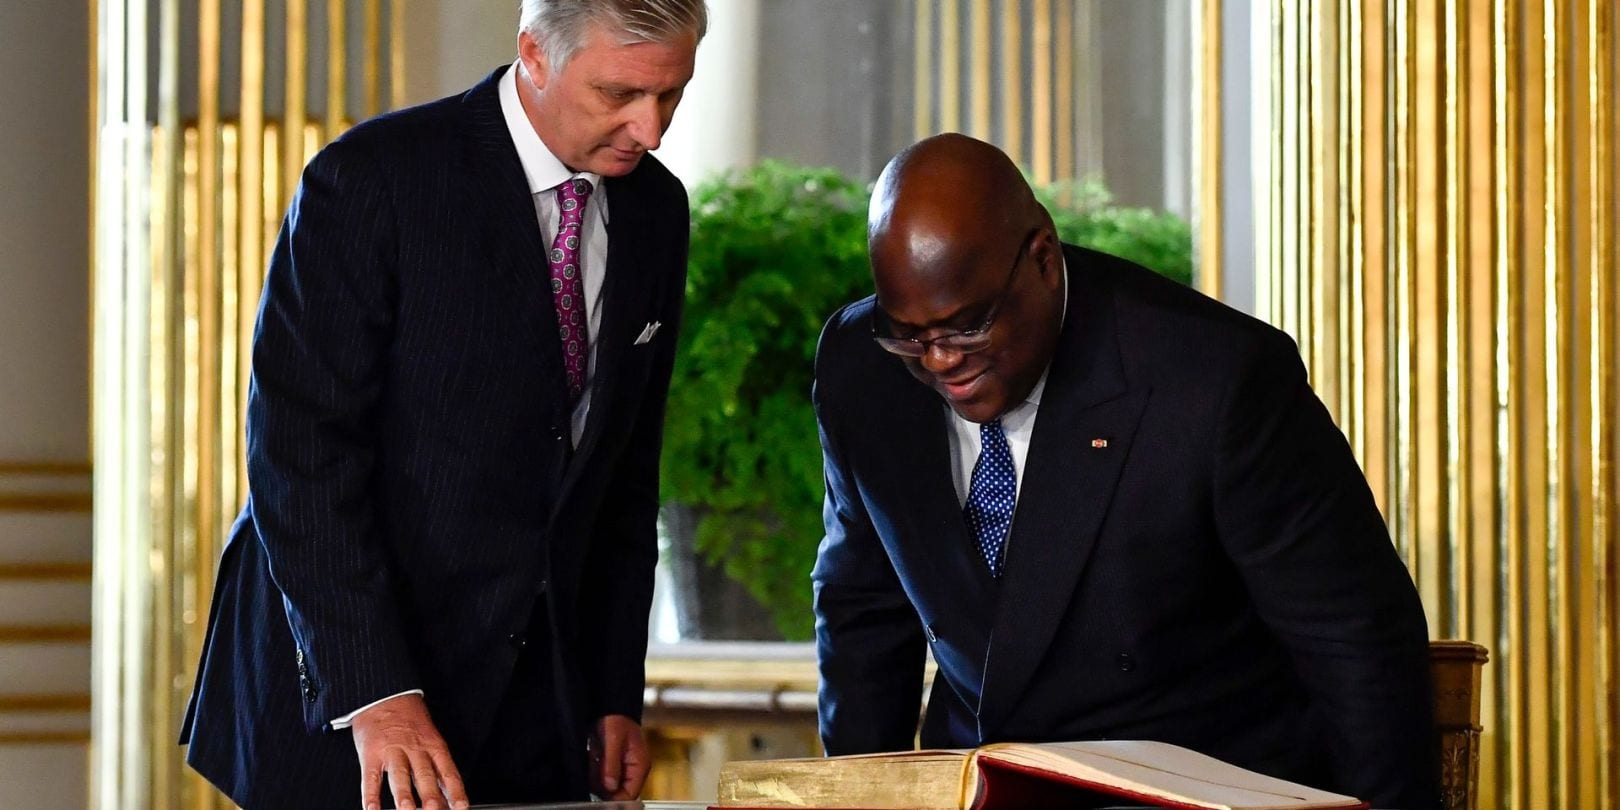 Pour Son Passé Colonial, La Belgique Exprime Ses « Profonds Regrets » Au Peuple Congolais